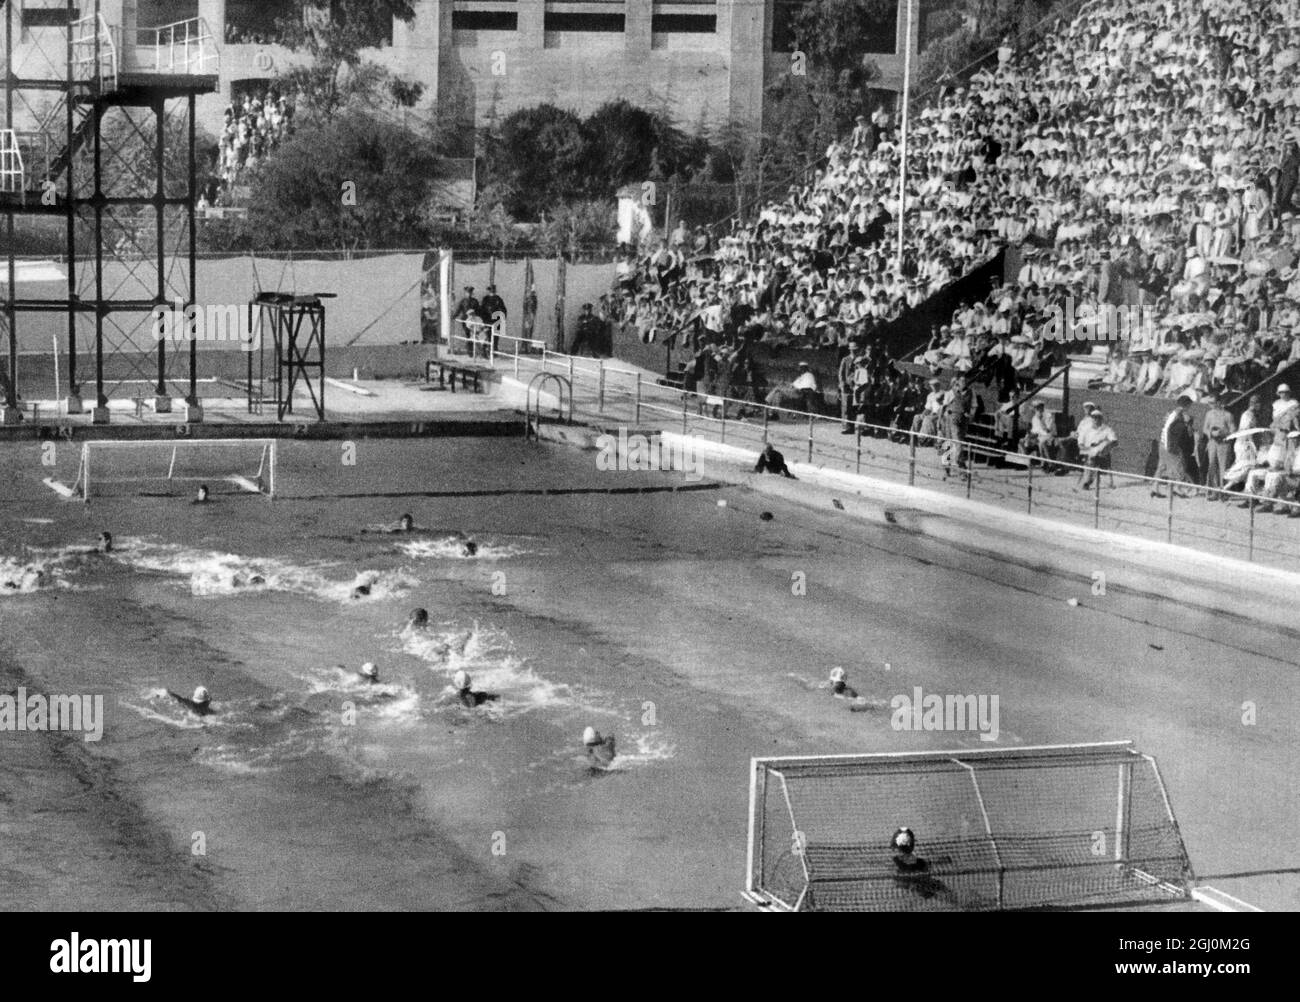 Polo acquatico alle Olimpiadi estive di Los Angeles, California 1932 ufficialmente conosciuta come i Giochi dell'X Olympiad Foto Stock